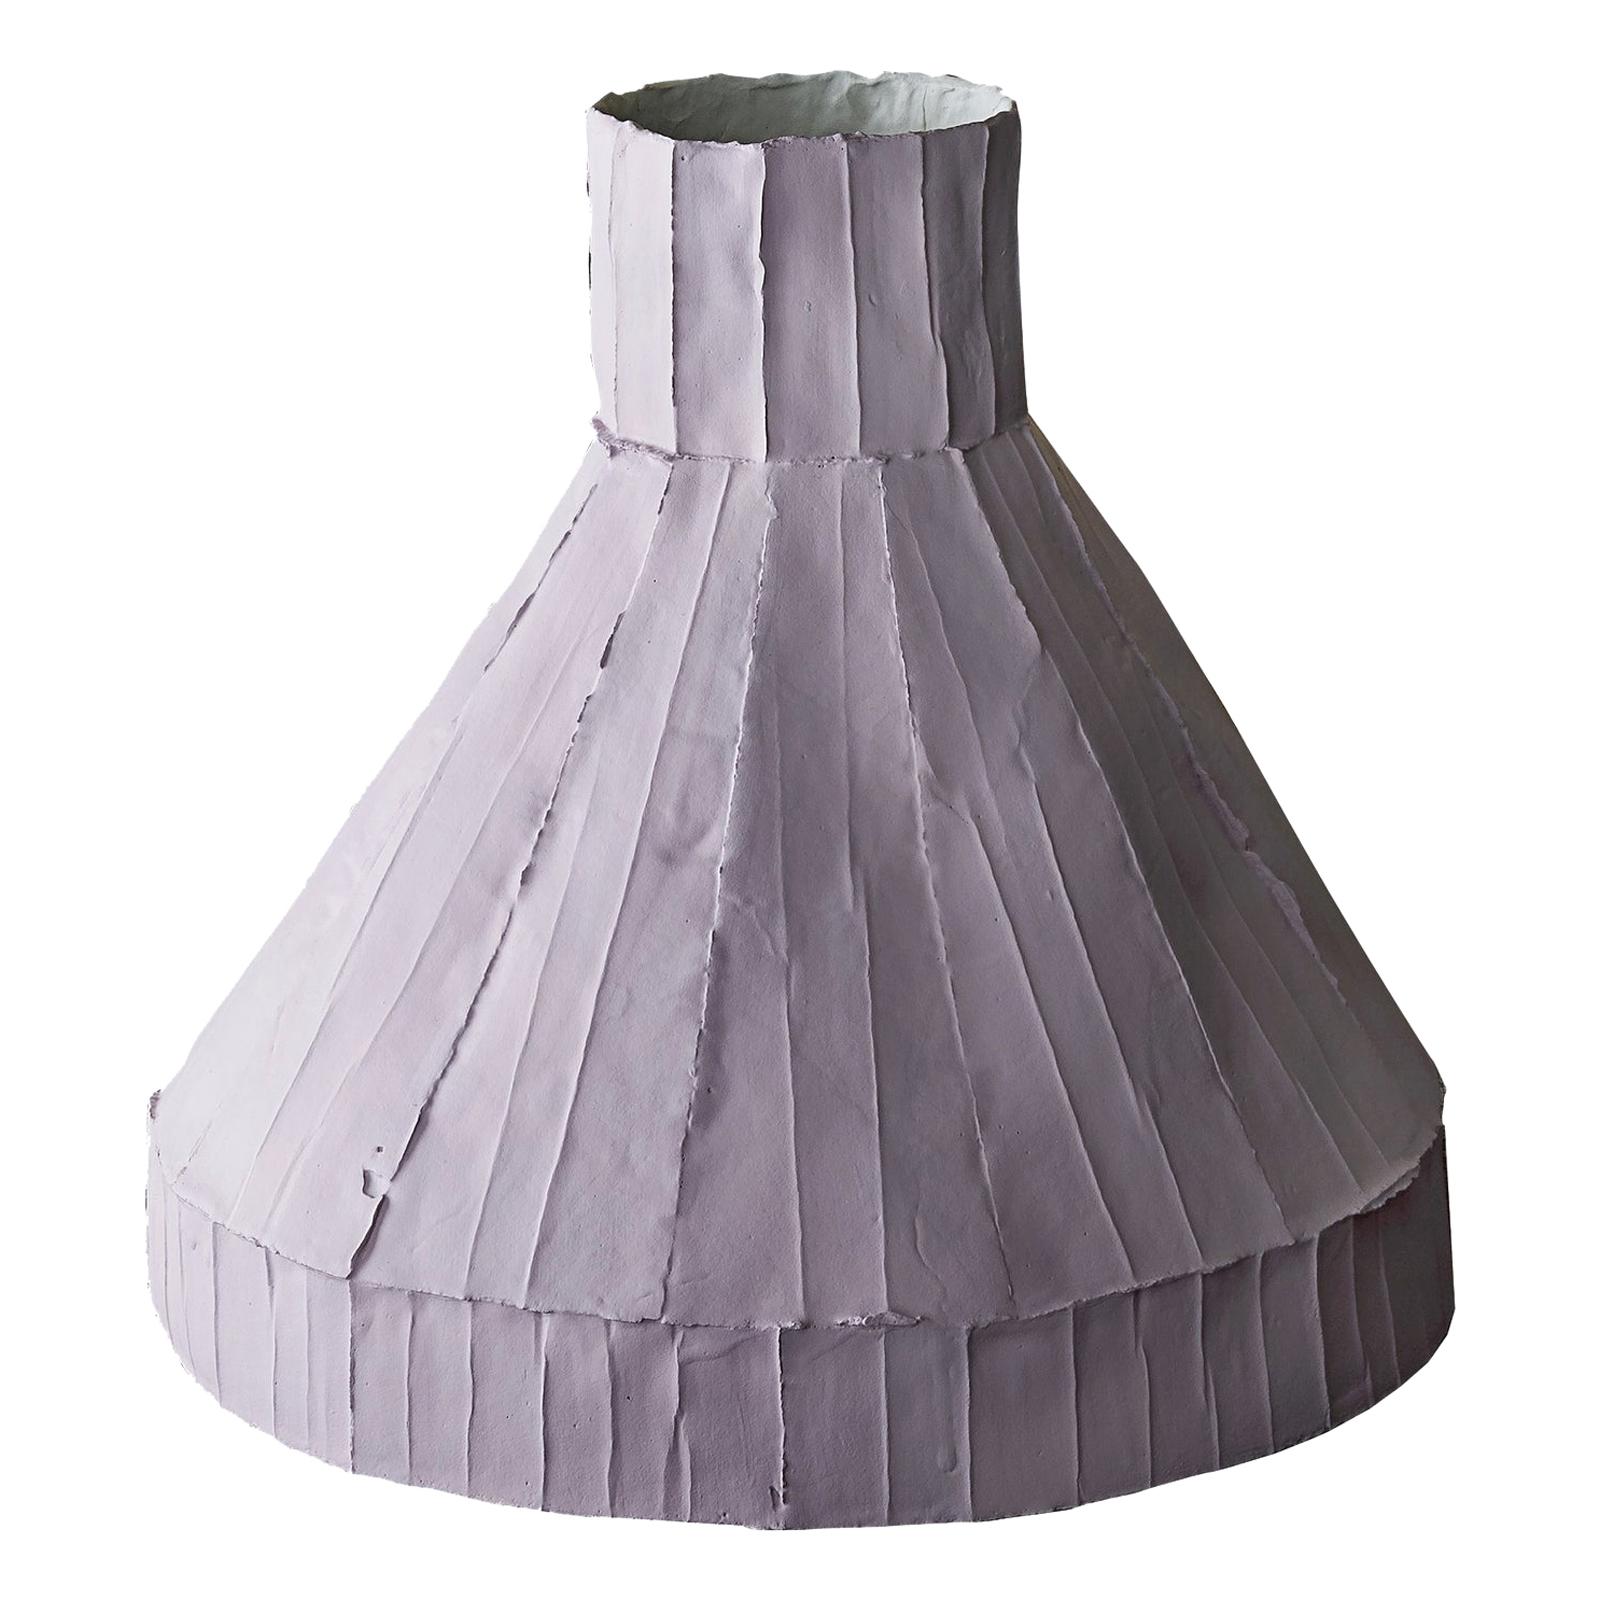 Contemporary Ceramic Vulcano Corteccia Texture Lilac Low Vase For Sale